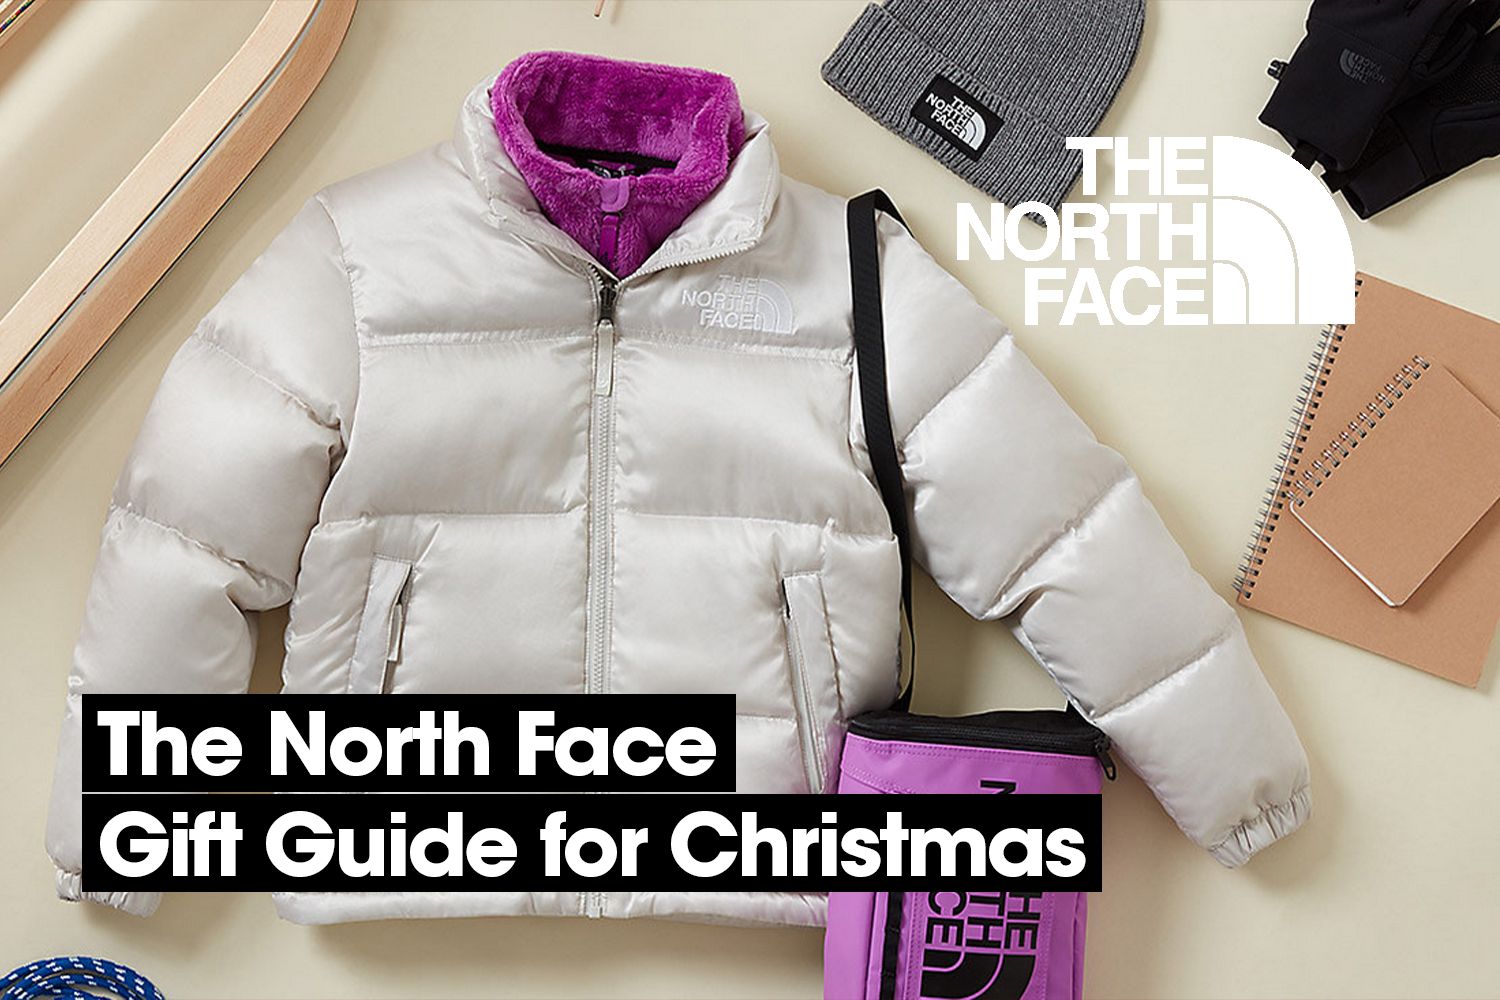 Onze favorieten uit de cadeaugids van The North Face